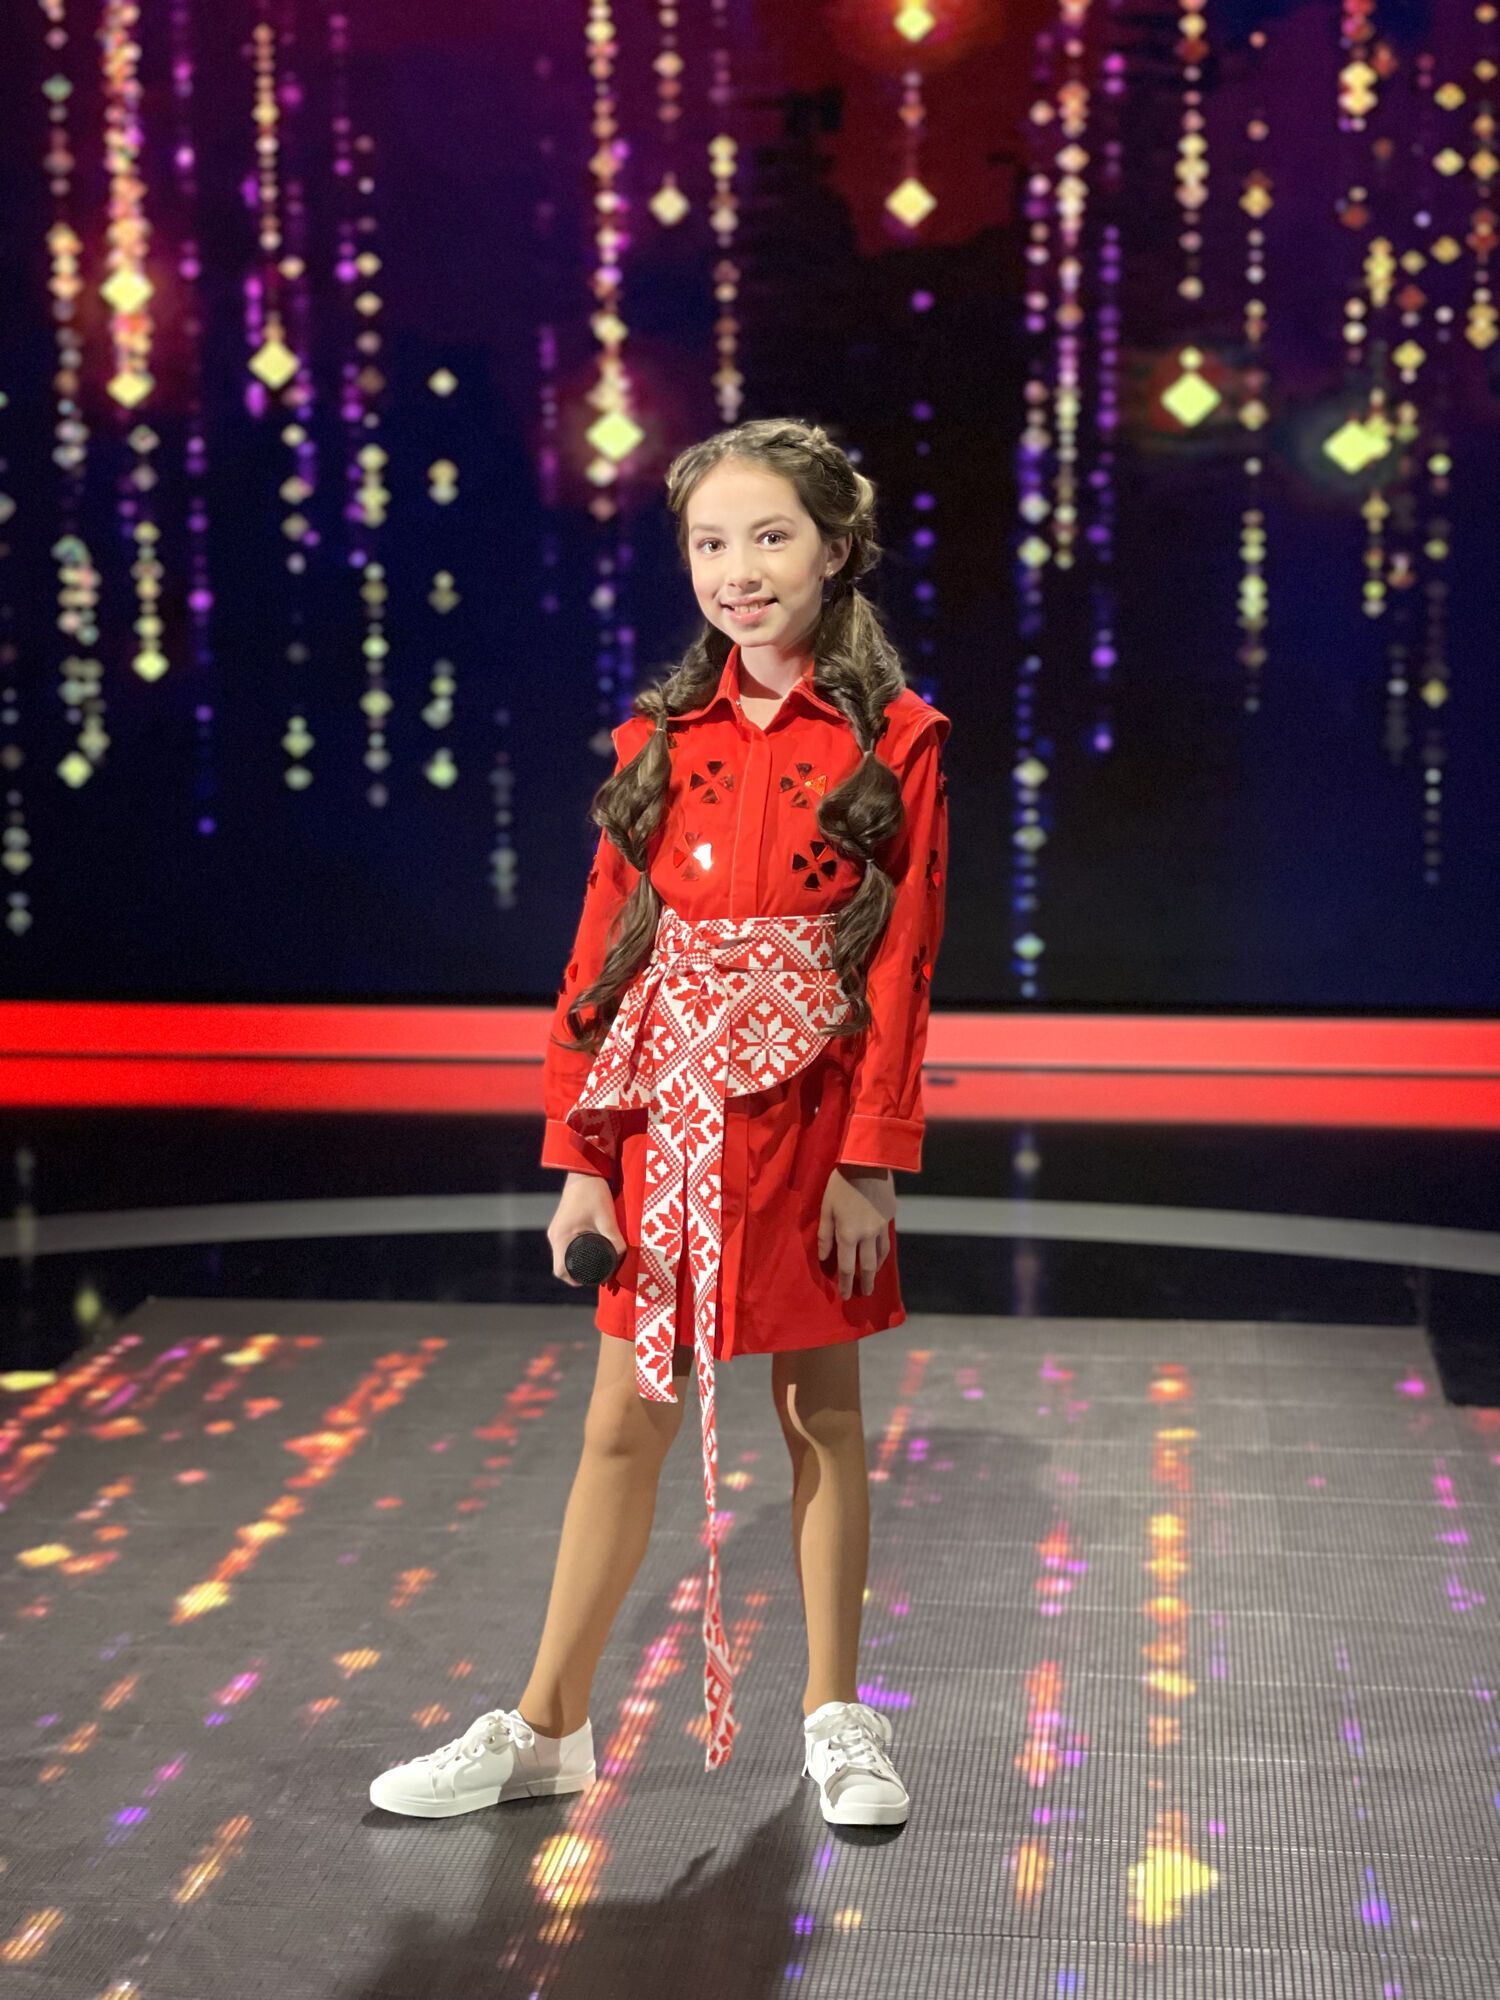 Багатогранність юної дівчинки вражає: Vlada K про роботу на телебаченні та кар’єру співачки